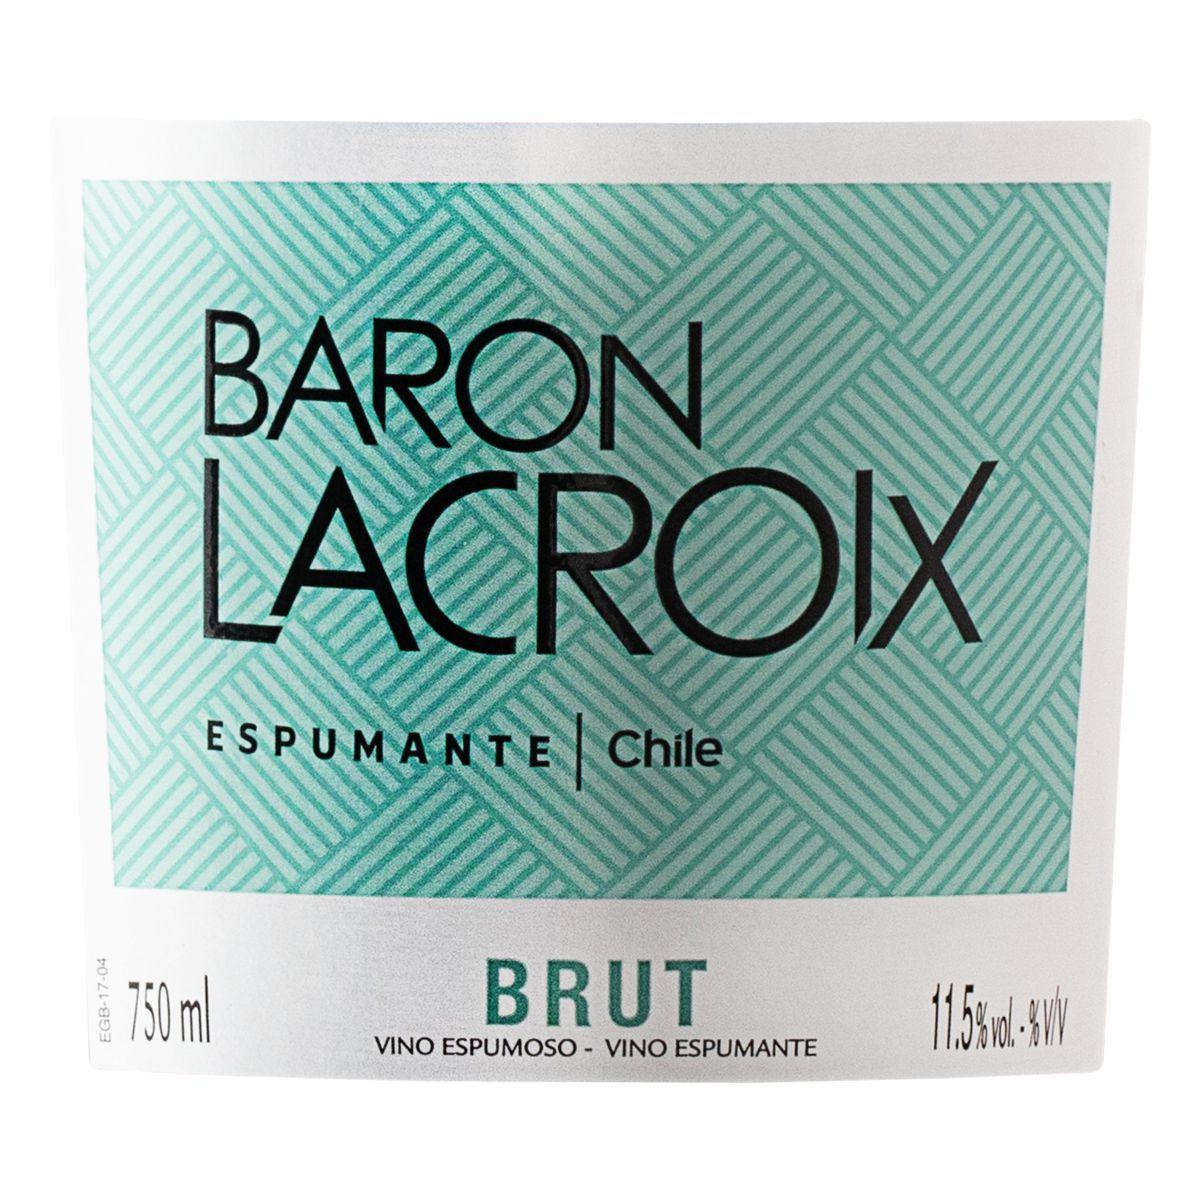 Espumante Brut Baron Lacroix 750ml